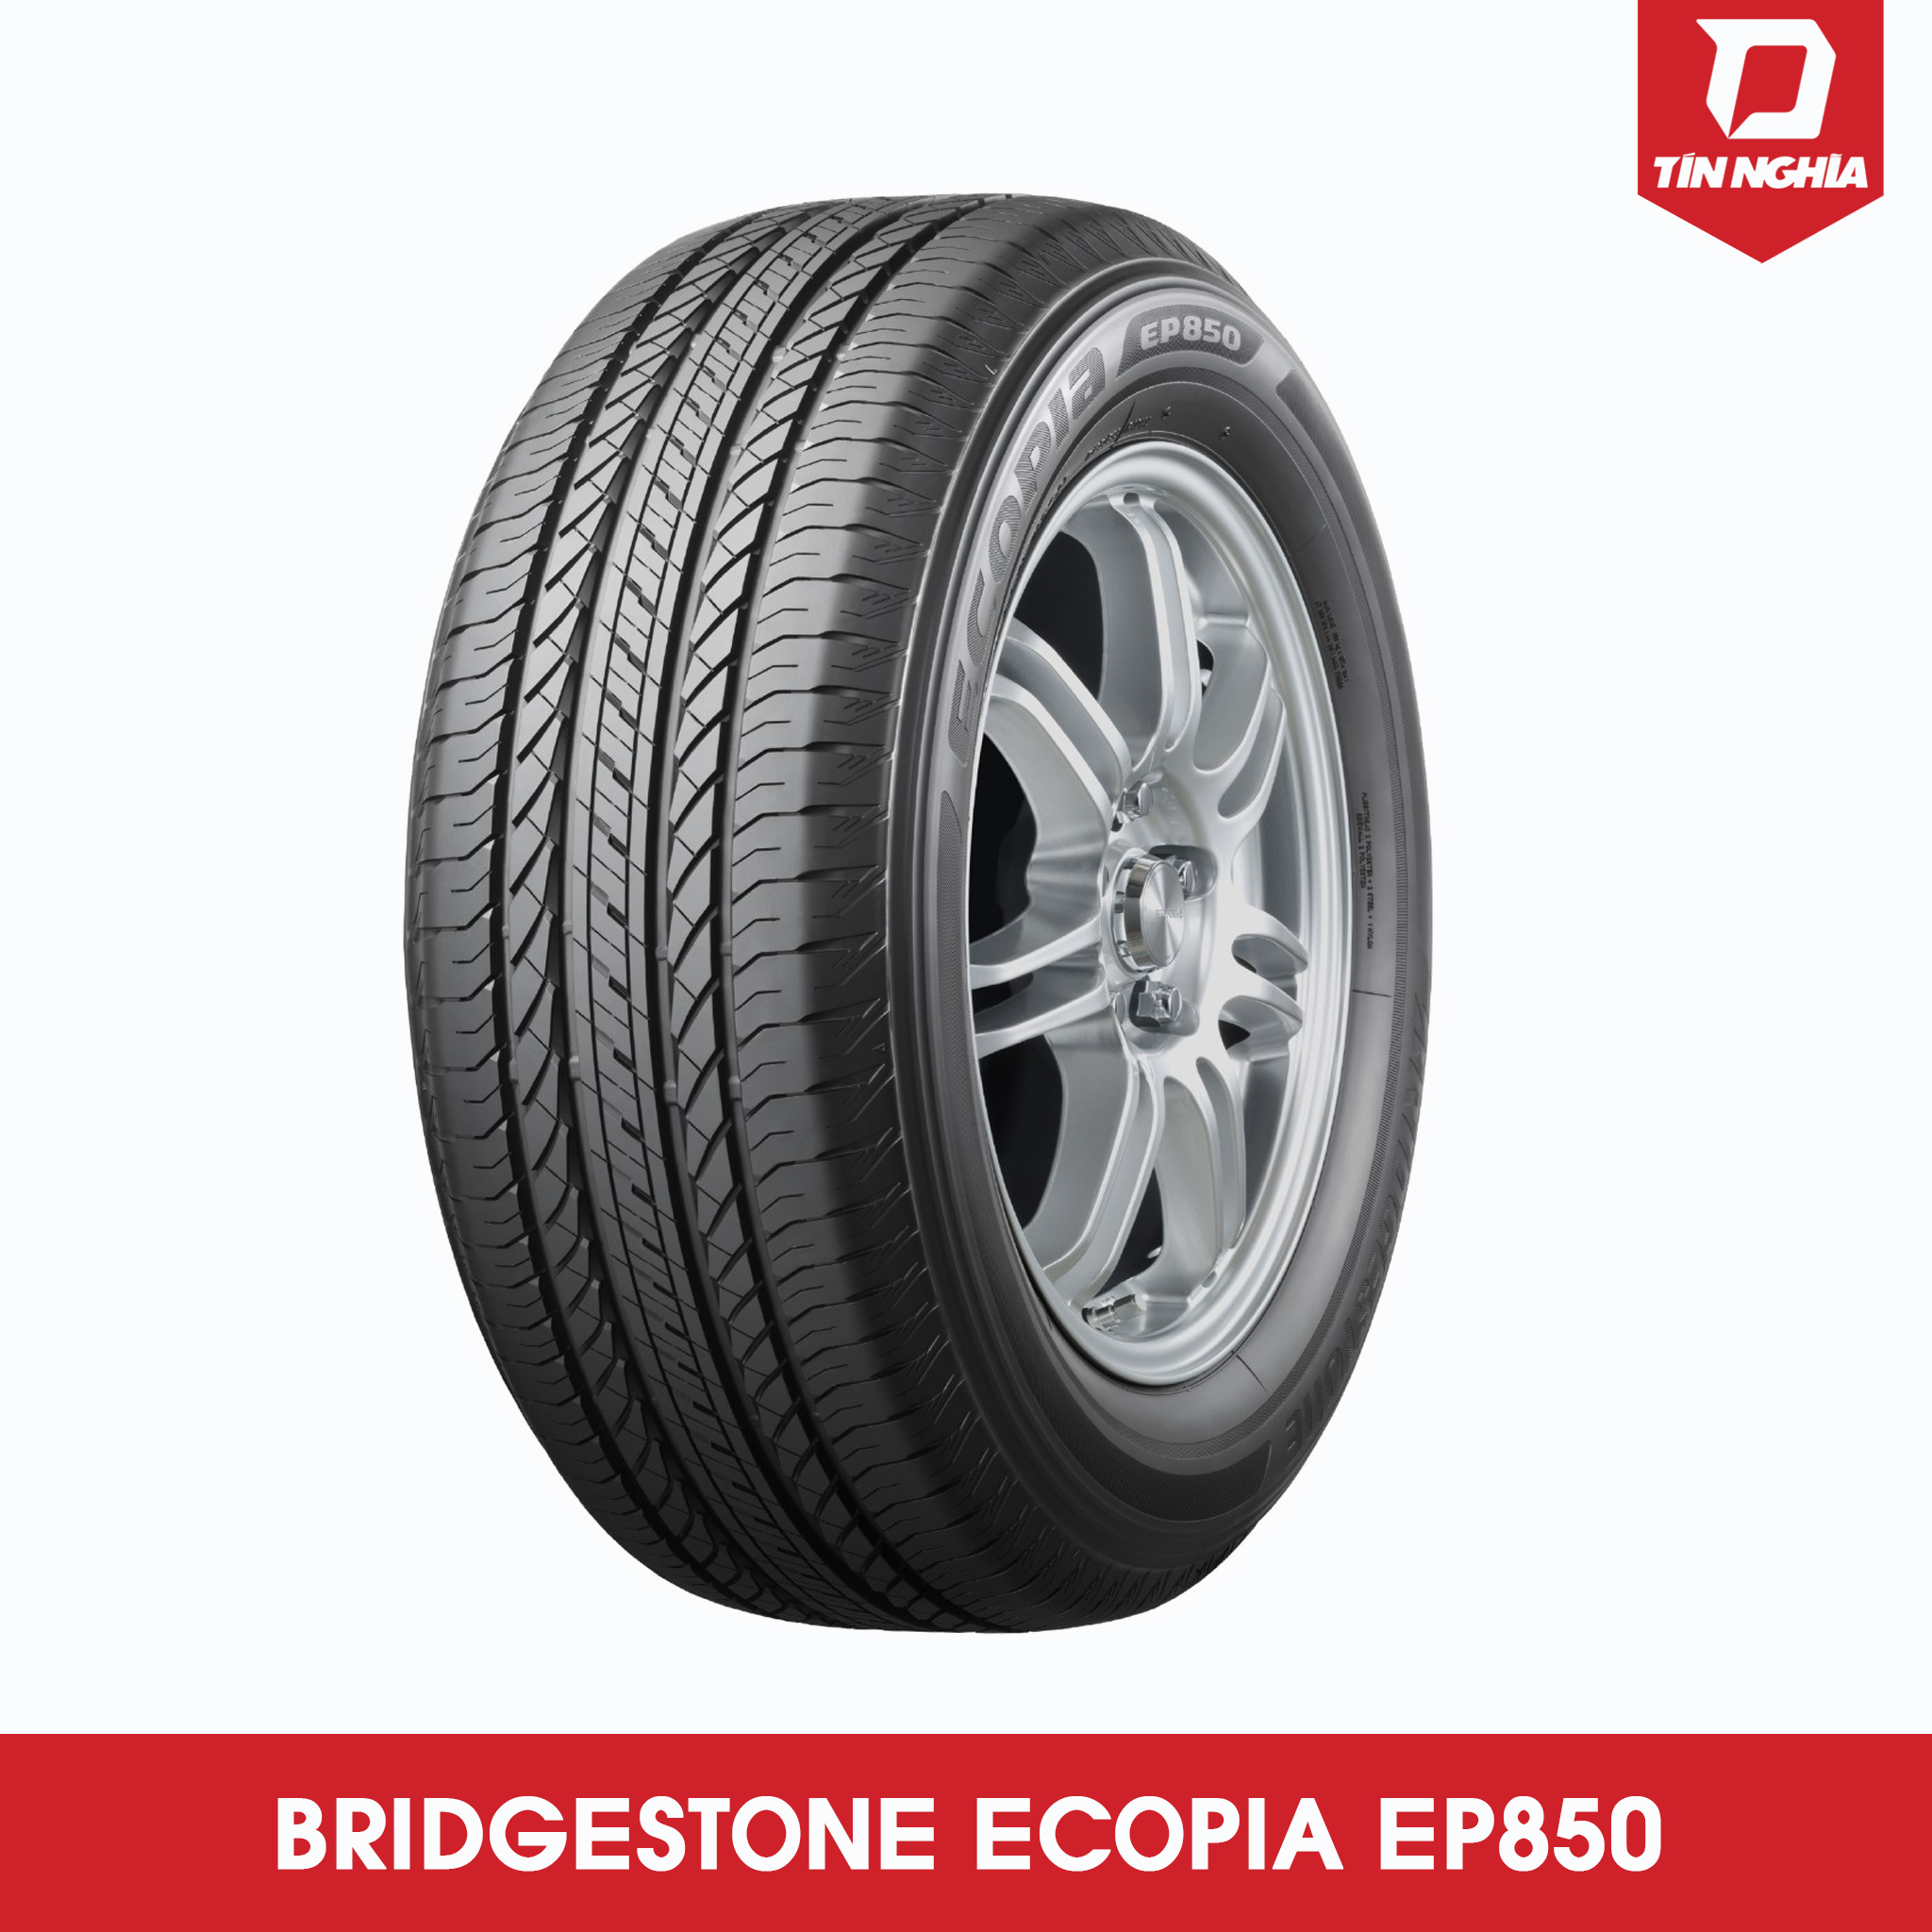 BRIDGESTONE ECOPIA EP850